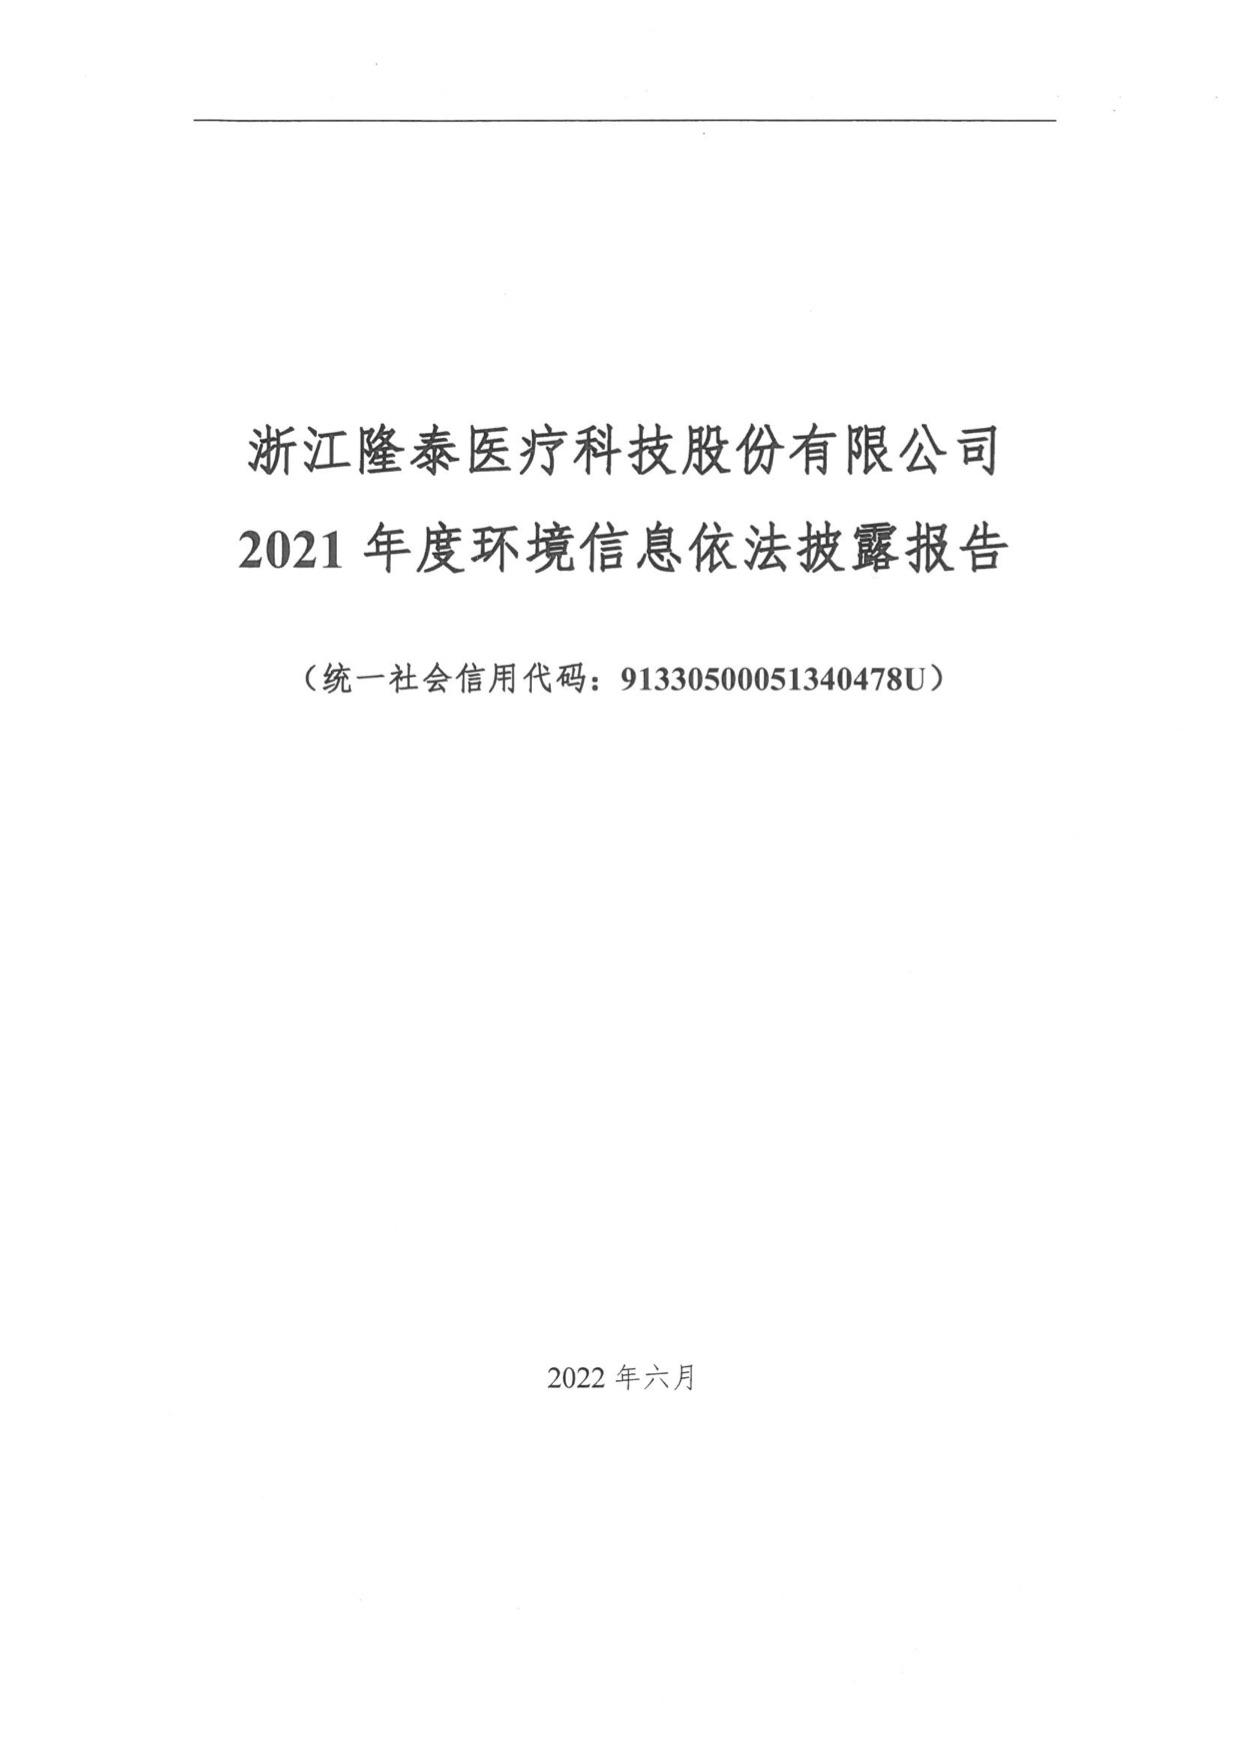 关于2021年度环境信息报告公示